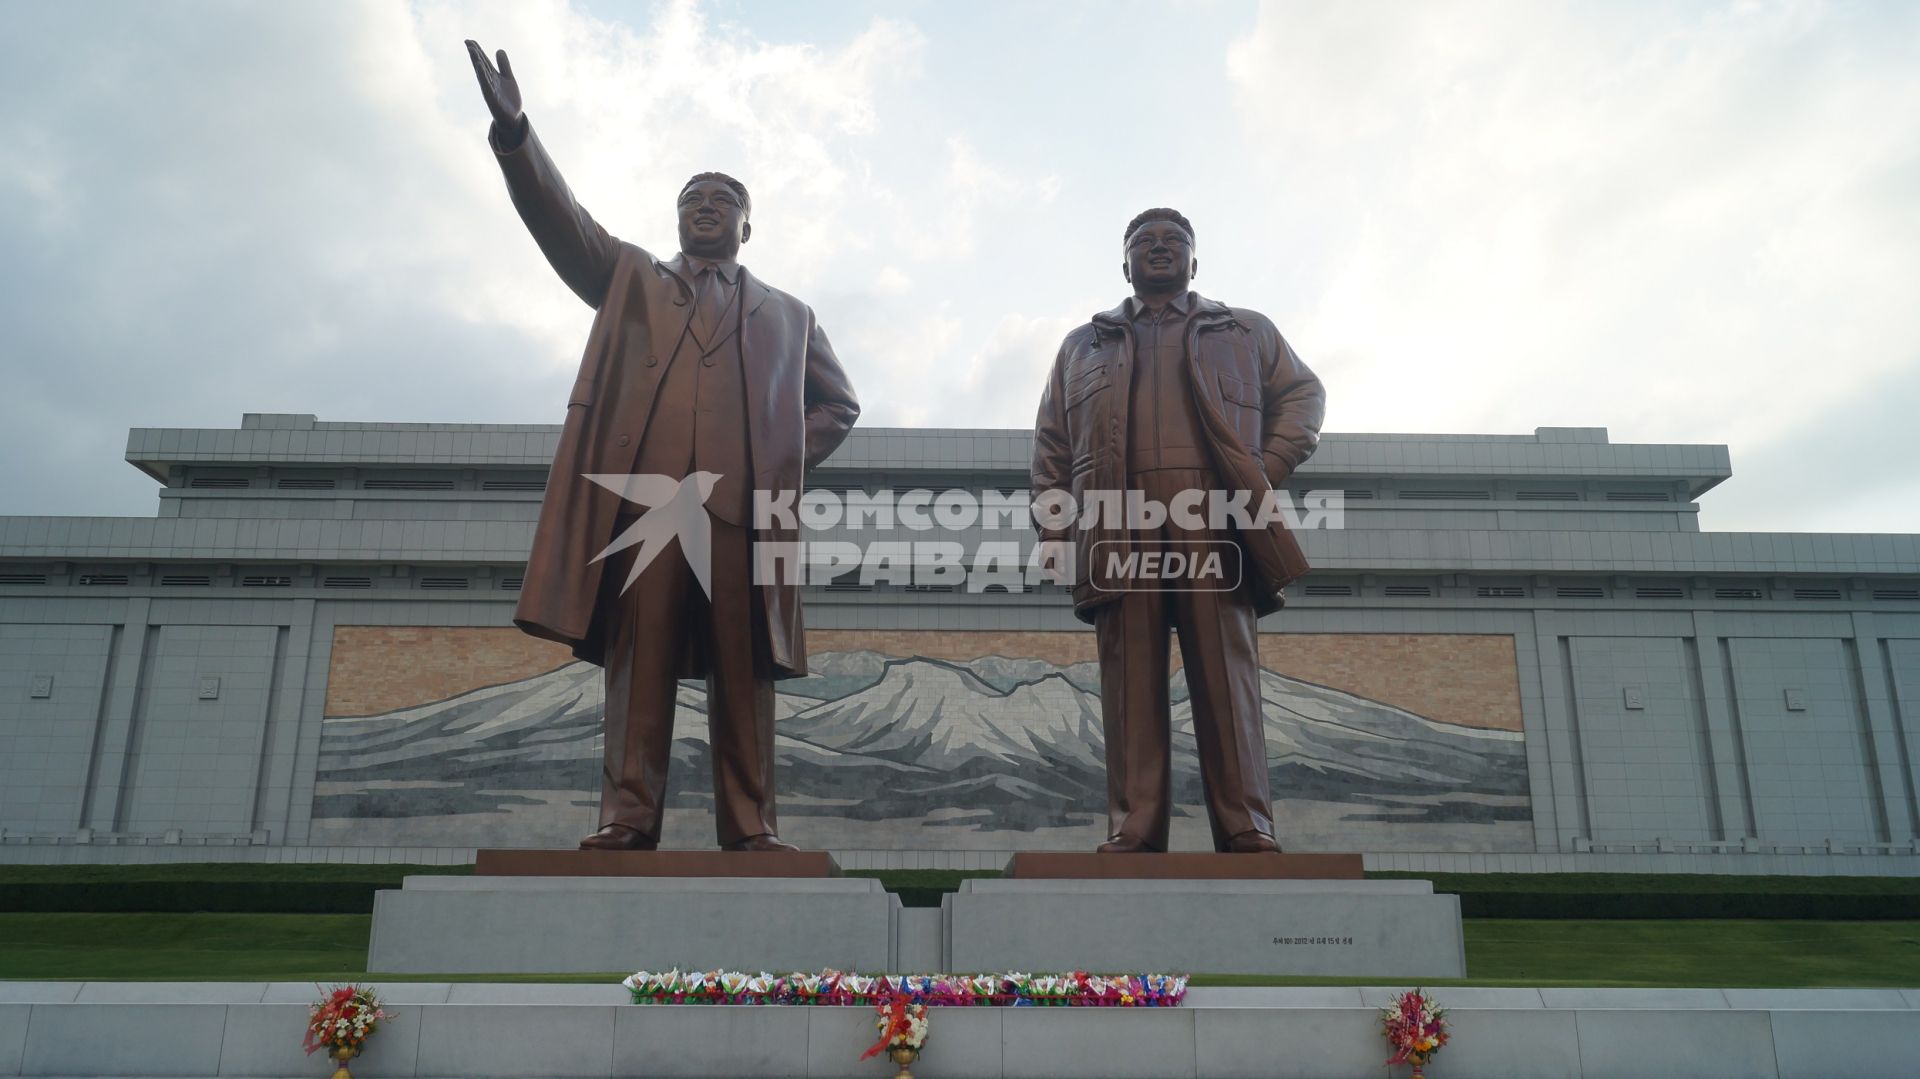 КНДР, Пхеньян. Бронзовые монументы Ким Ир Сену и Ким Чен Иру на возвышенности Мансу.